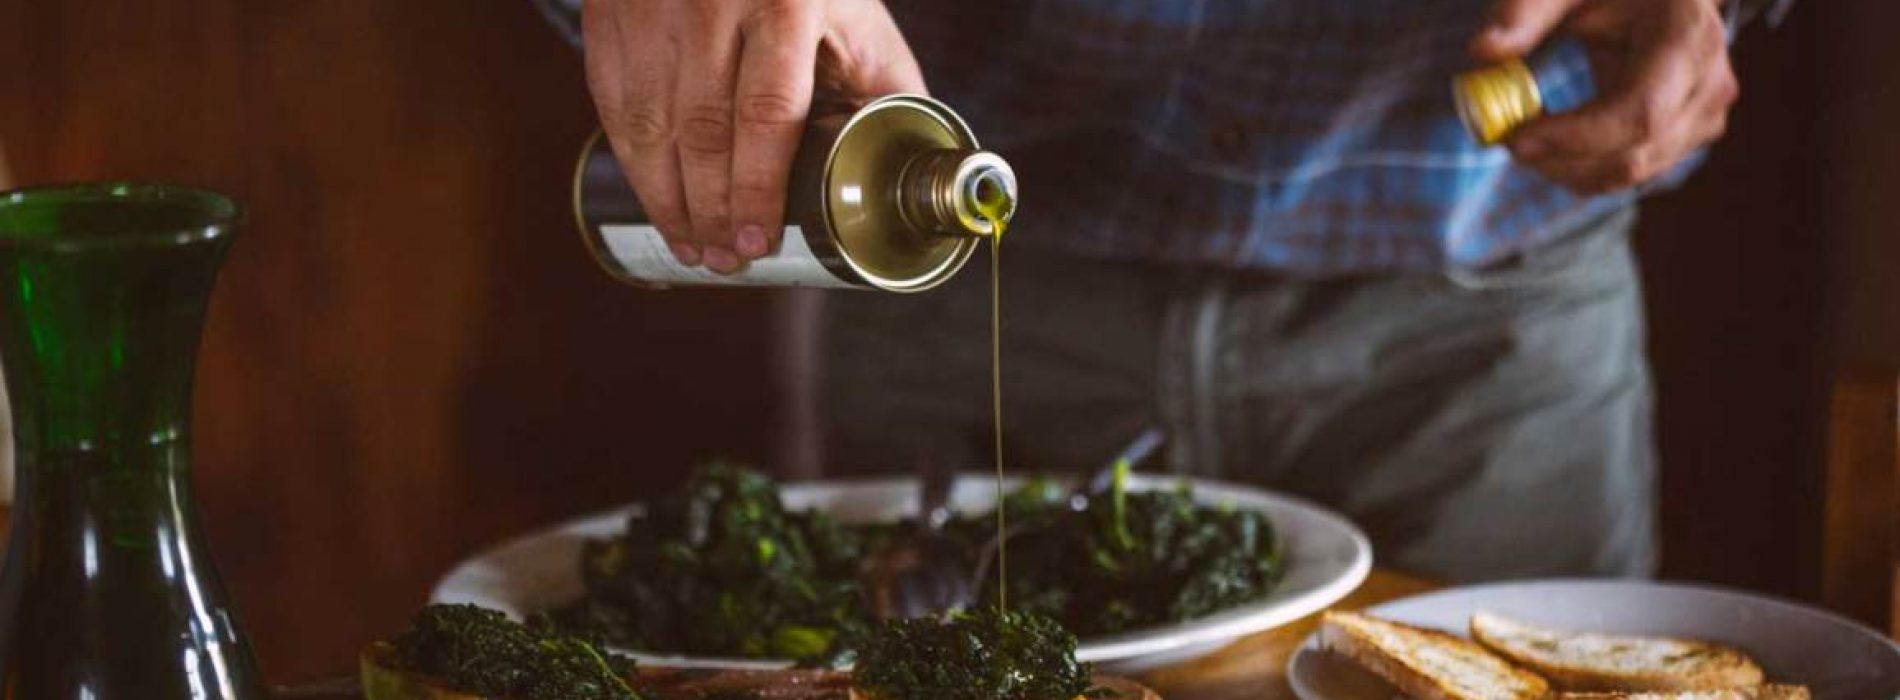 Hoe olijfolie uw risico op een hartaanval en beroerte vermindert